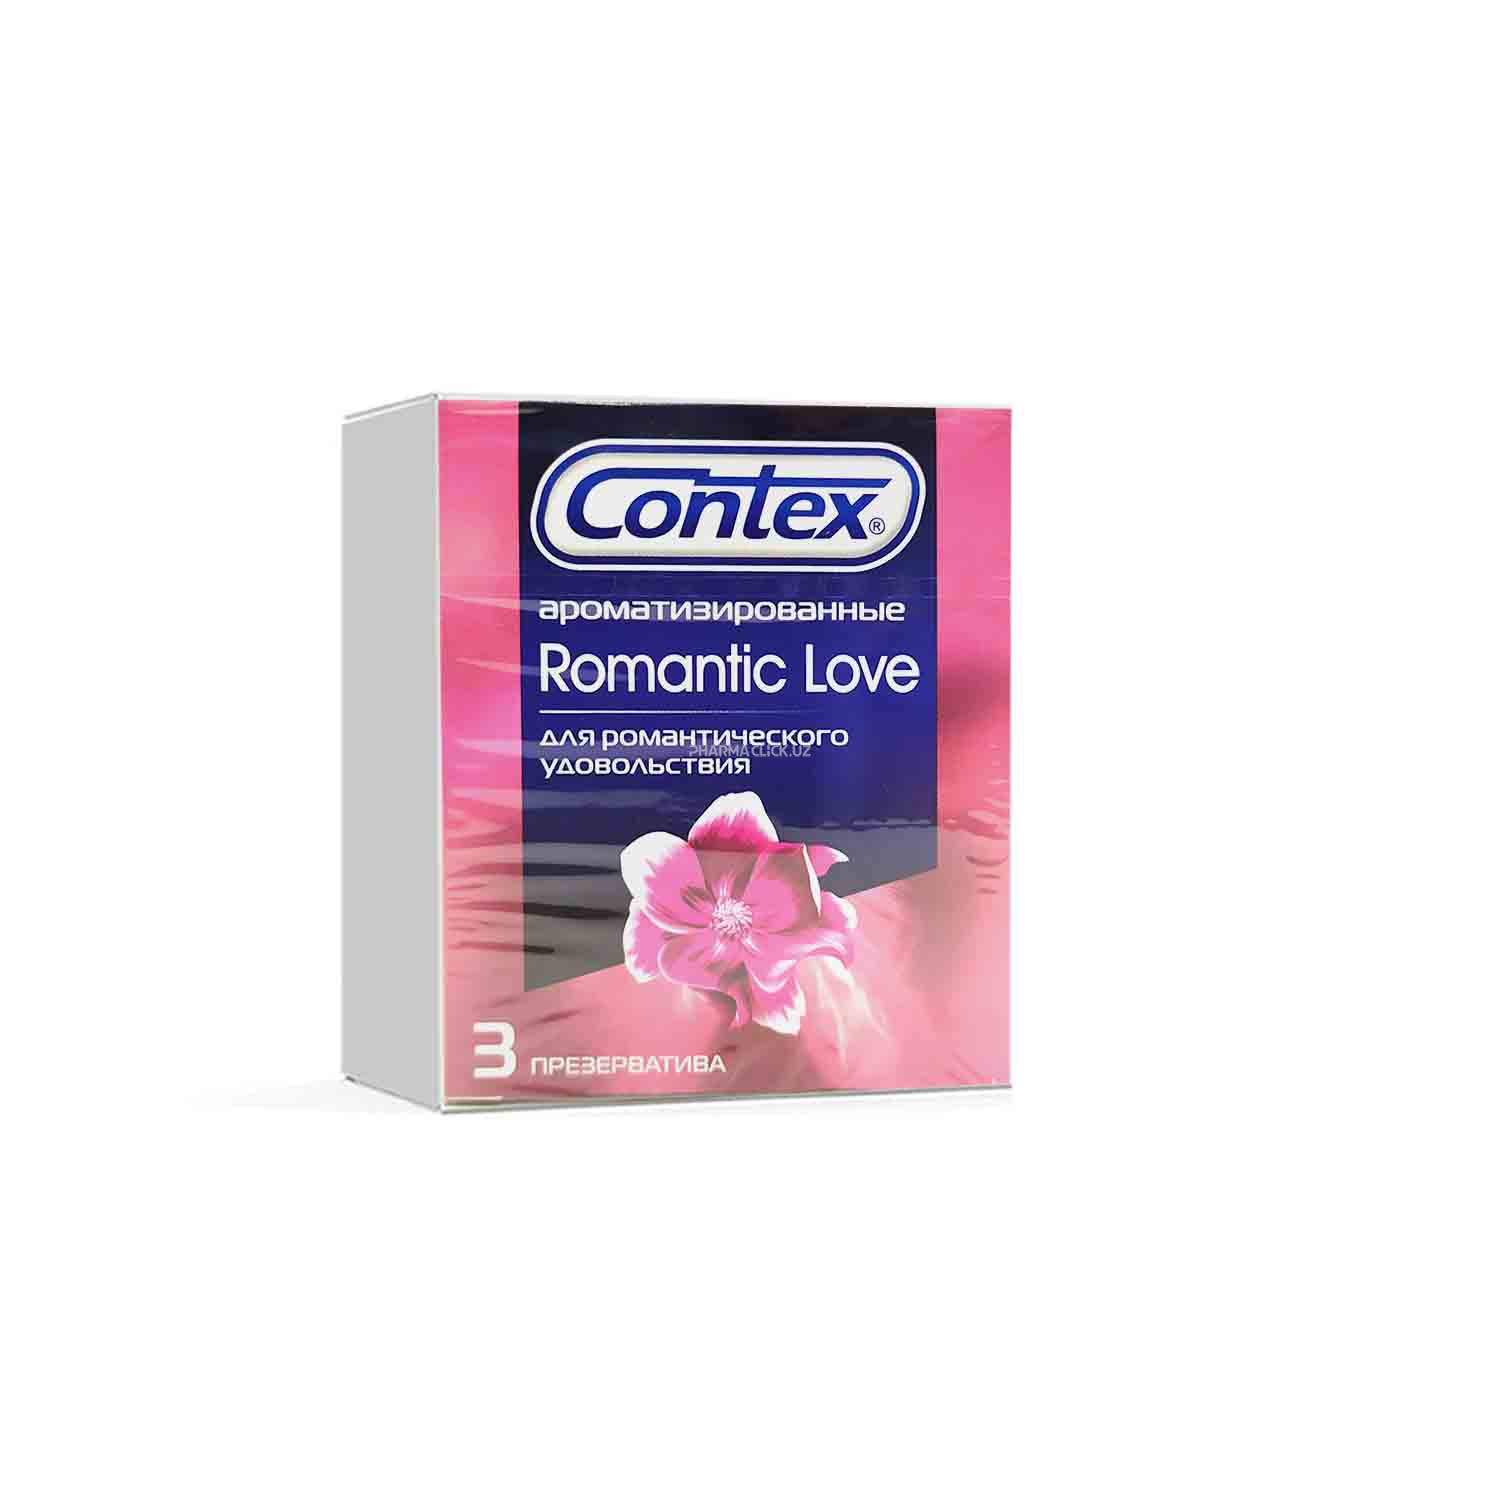 Презервативы Contex Romantic Love №3